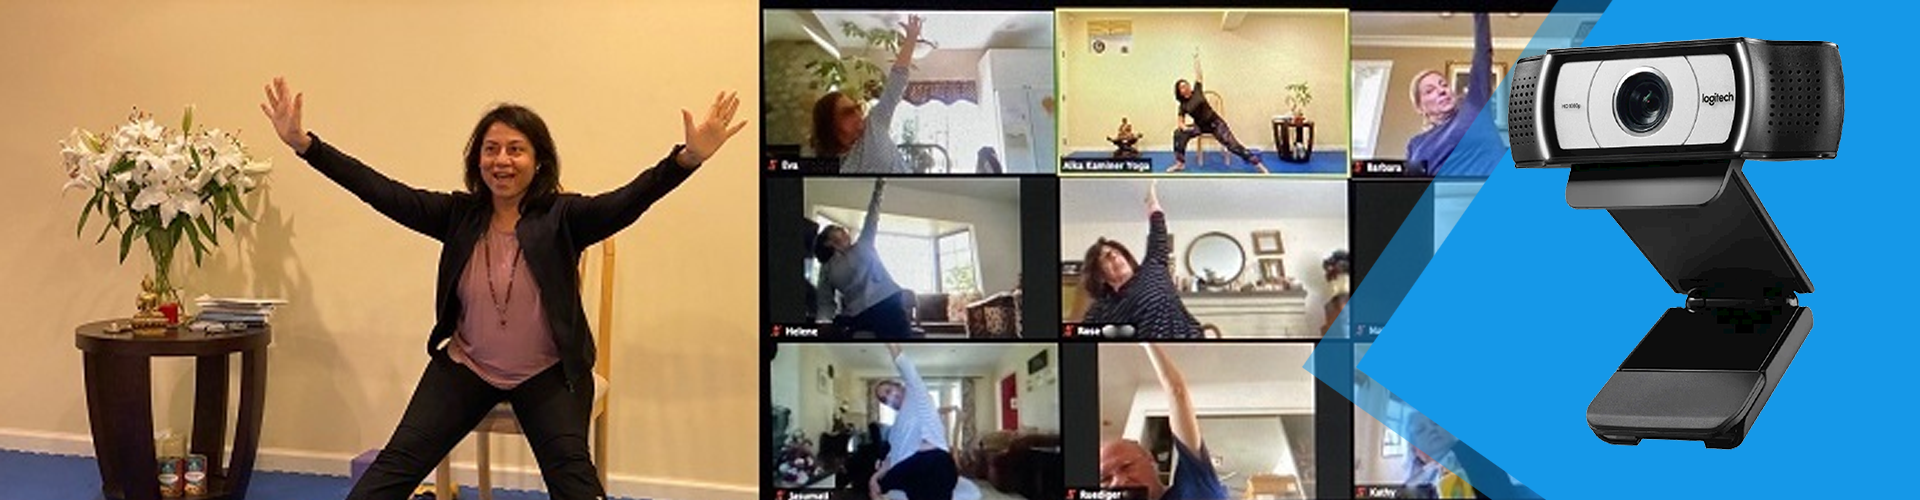 Webcam hội nghị dùng cho việc phát trực tiếp các lớp học Yoga của bạn